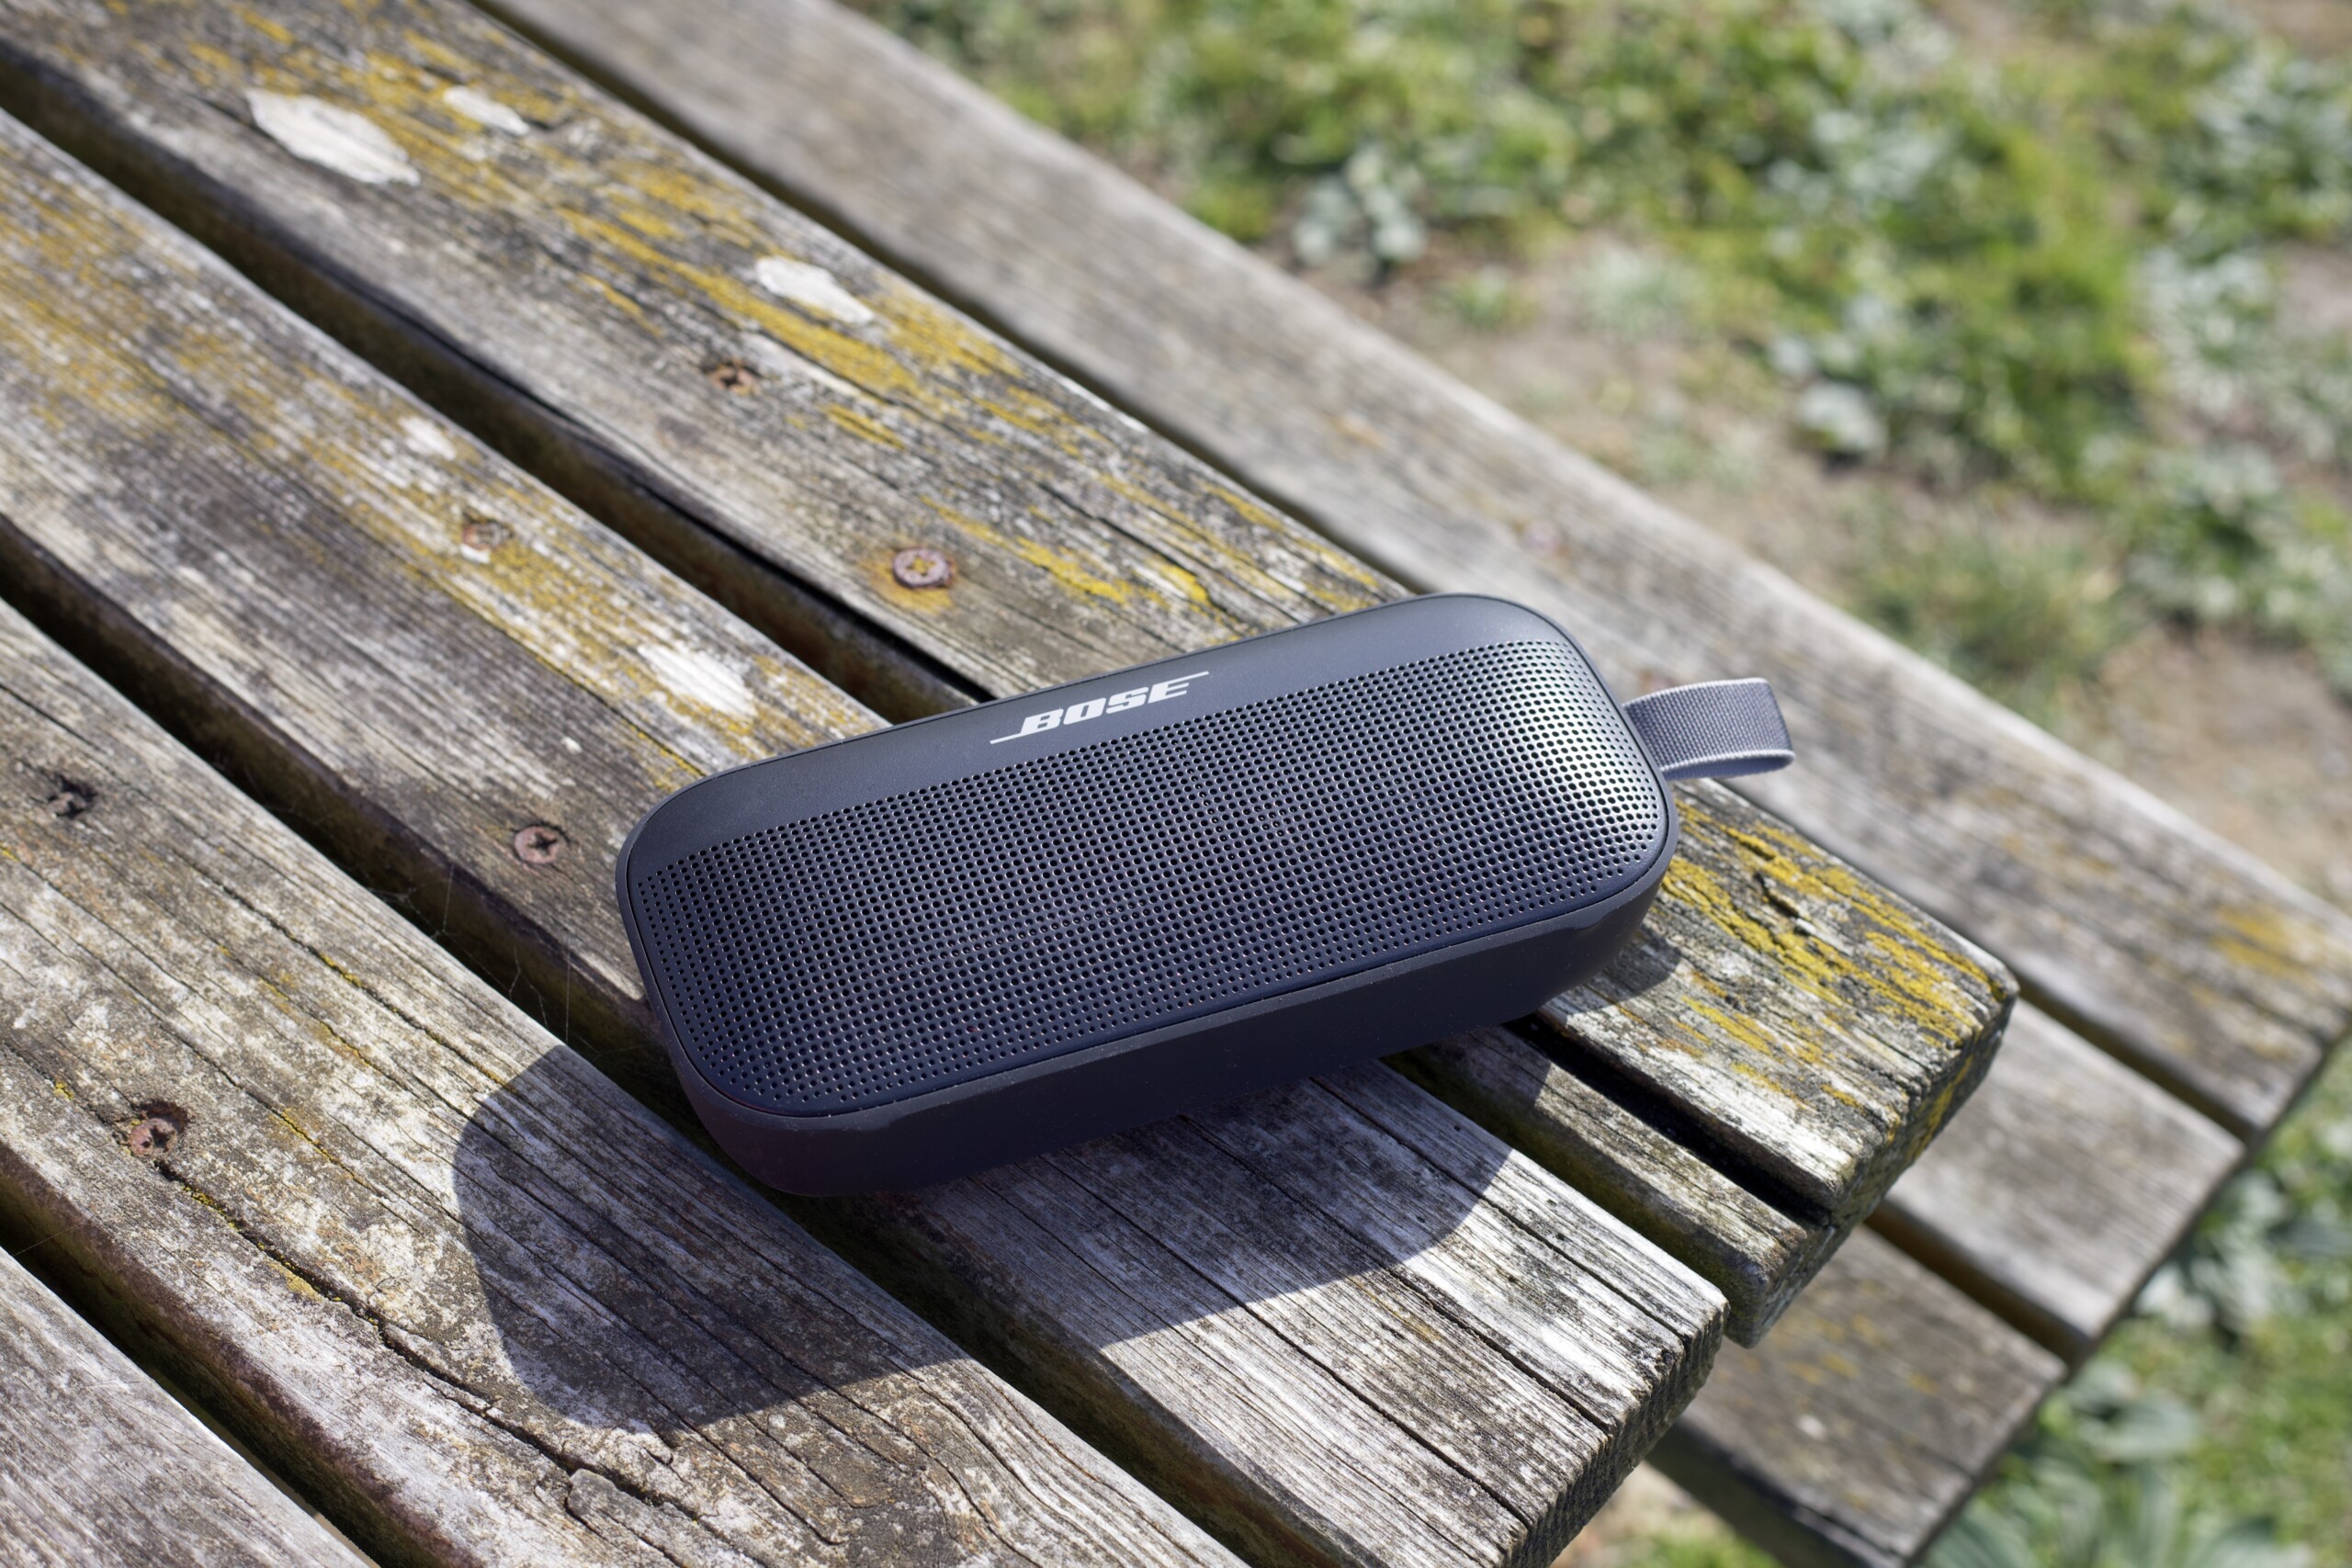 Test Bose SoundLink Flex : une enceinte portable robuste, étanche et  flatteuse - Les Numériques